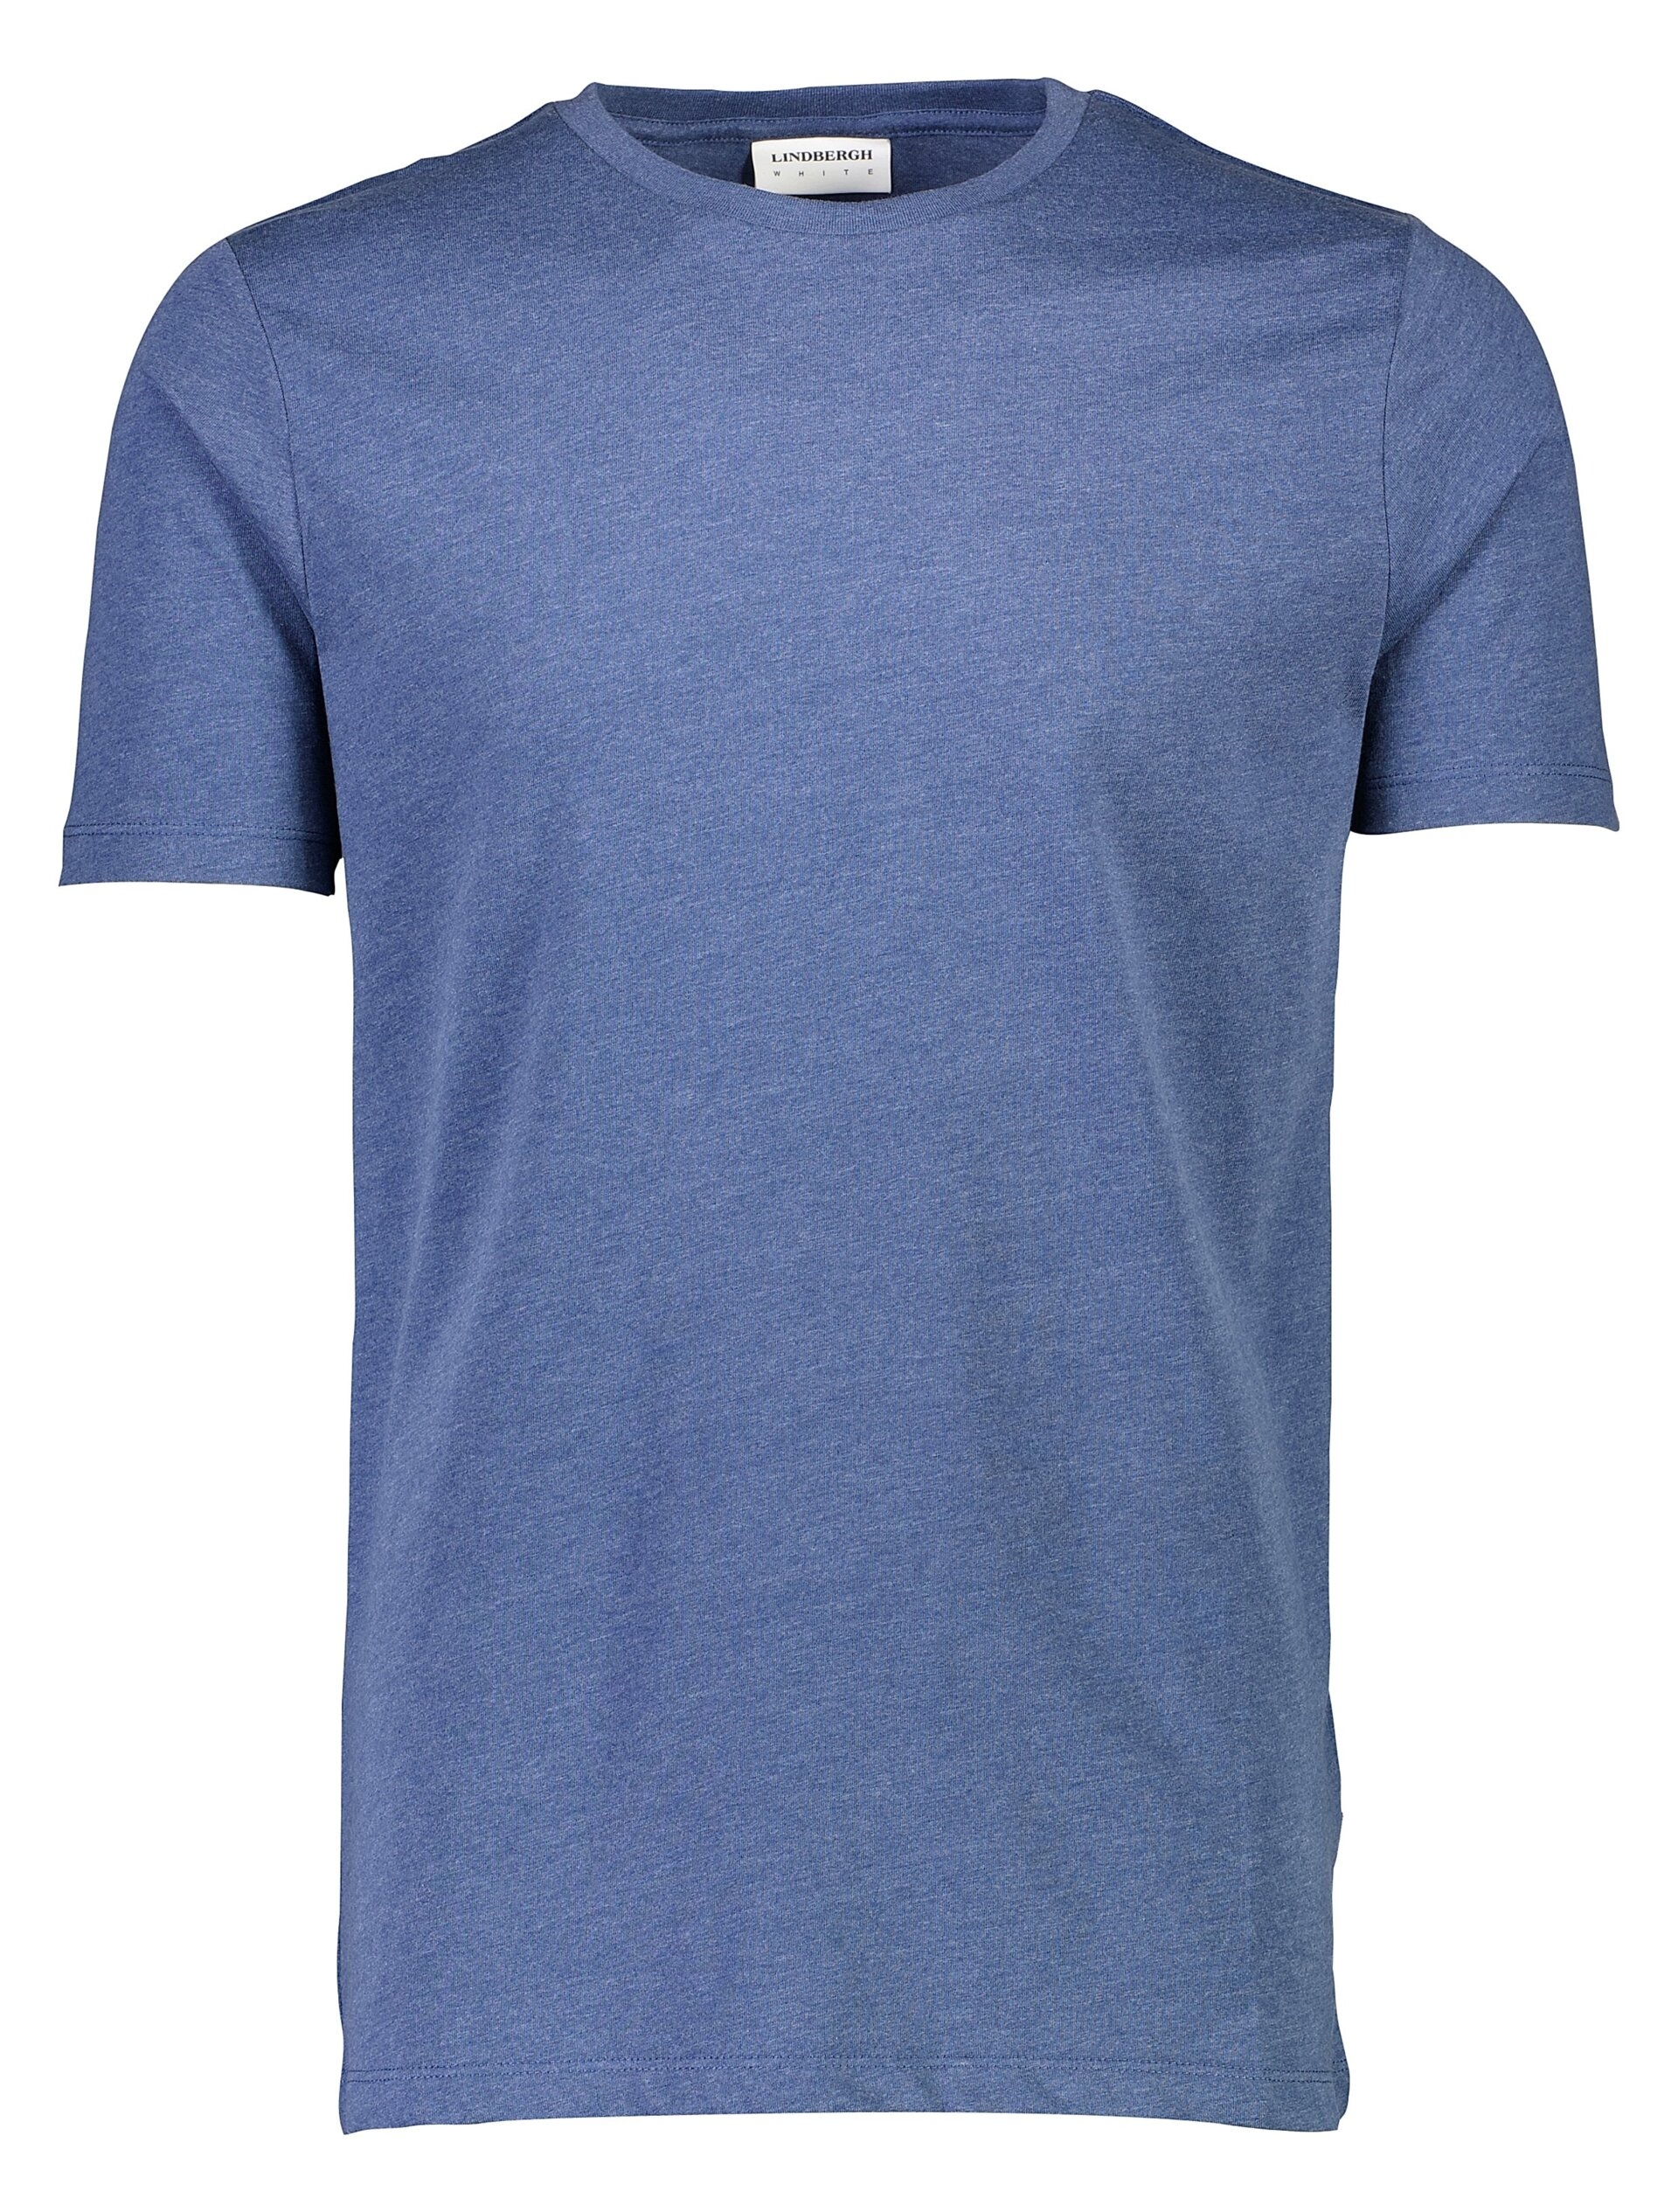 Lindbergh T-shirt blauw / blue mel